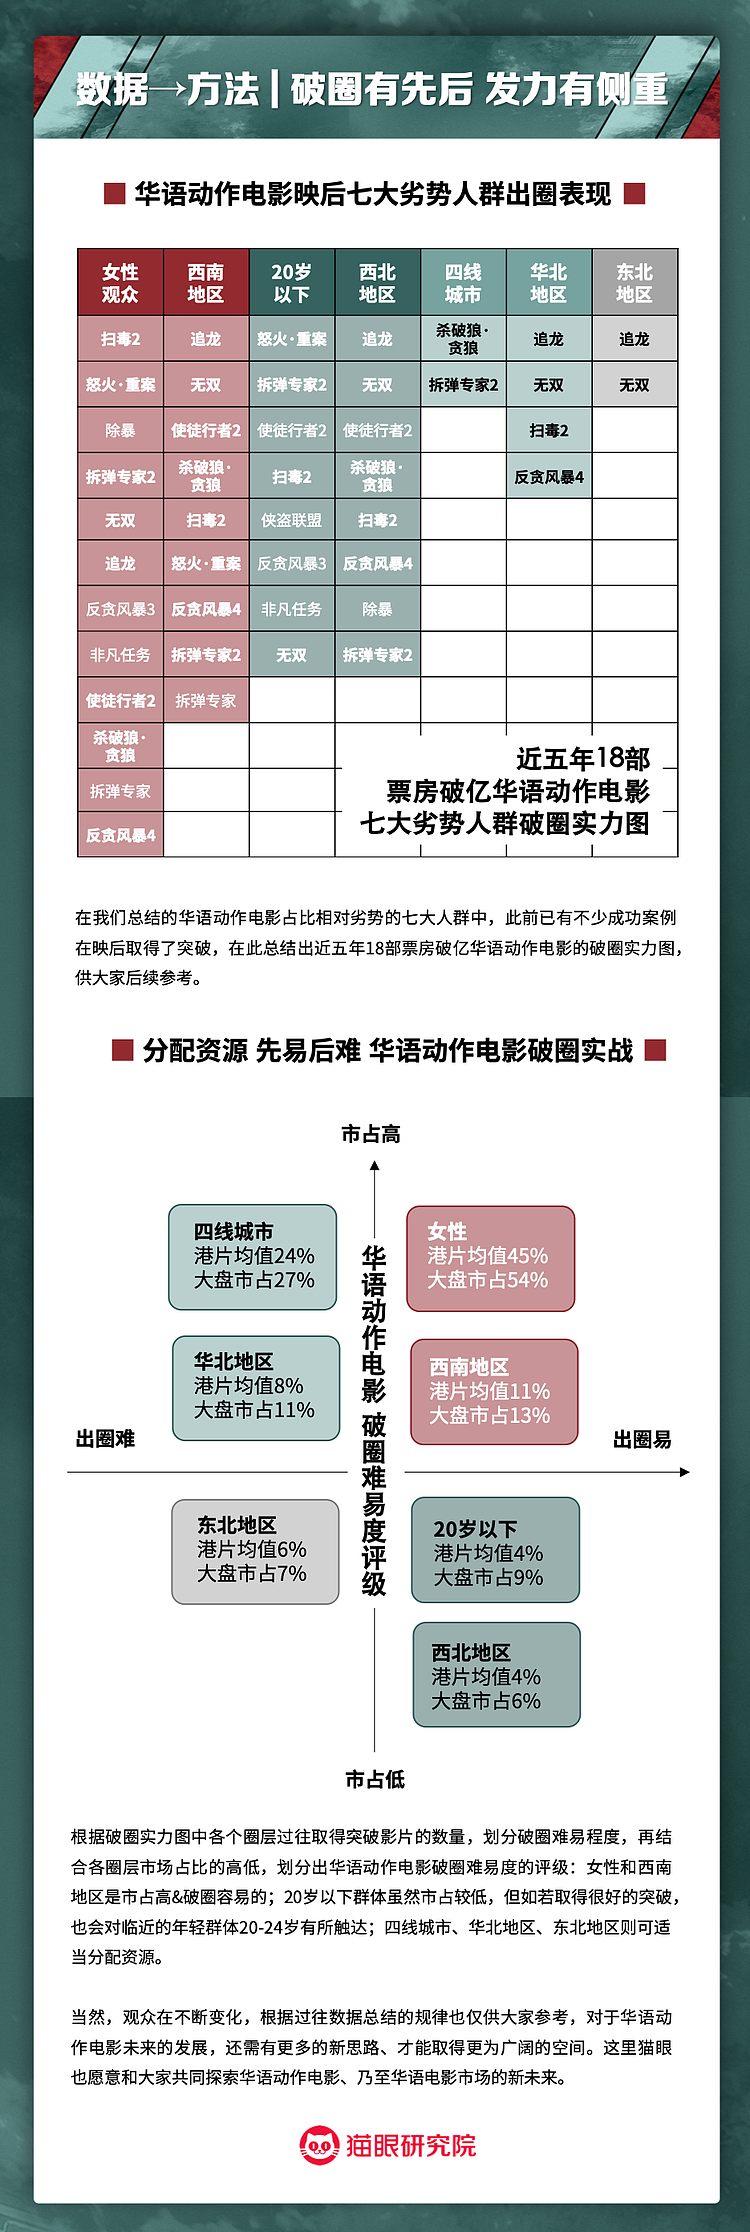 华语动作电影数据洞察：将优势点和突破口部署于制发放各环节 - 13